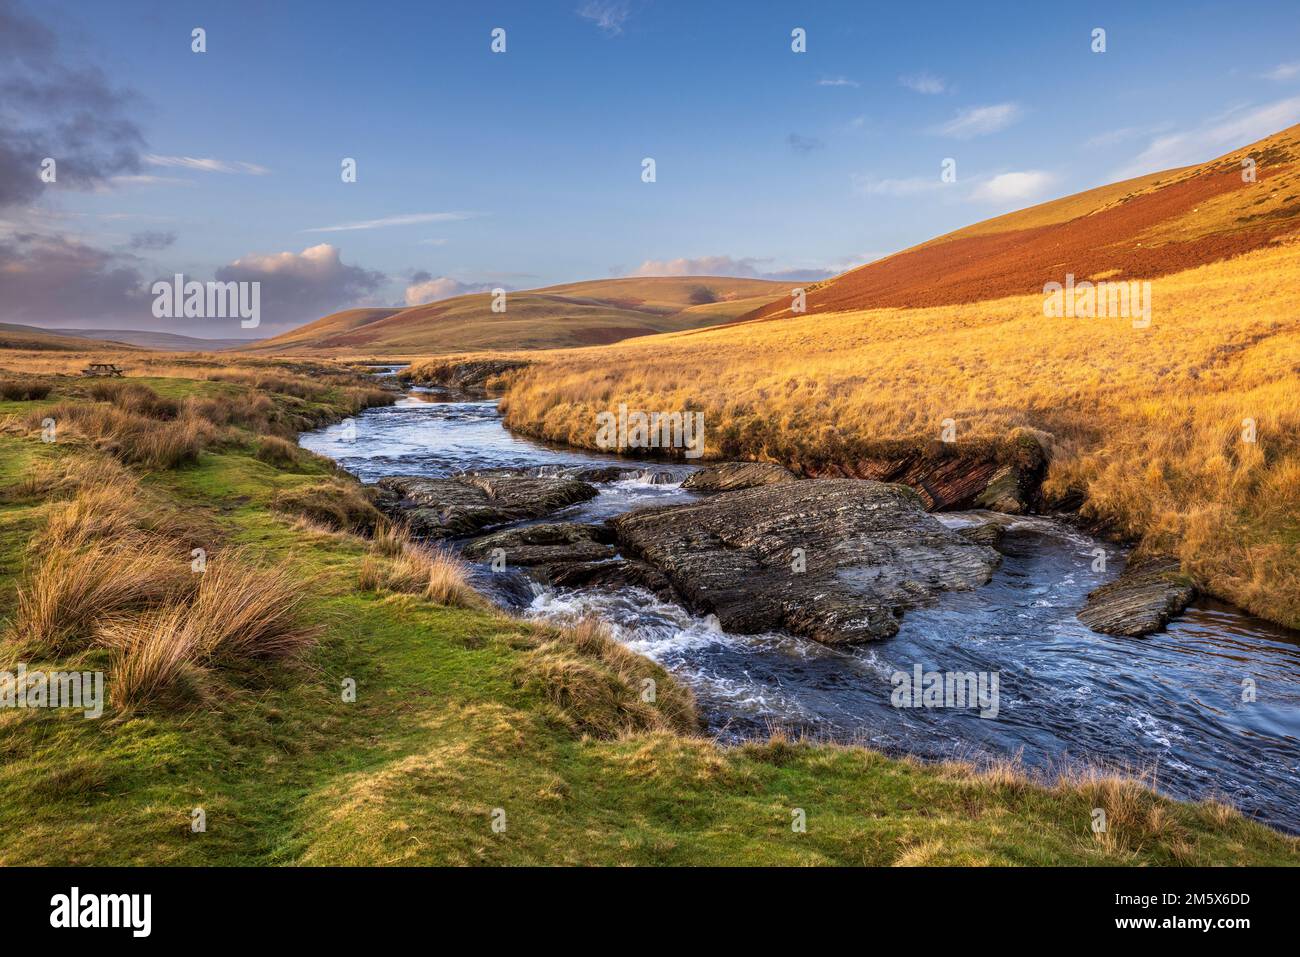 The Elan River flowing through Elan Valley, Powys, Wales Stock Photo